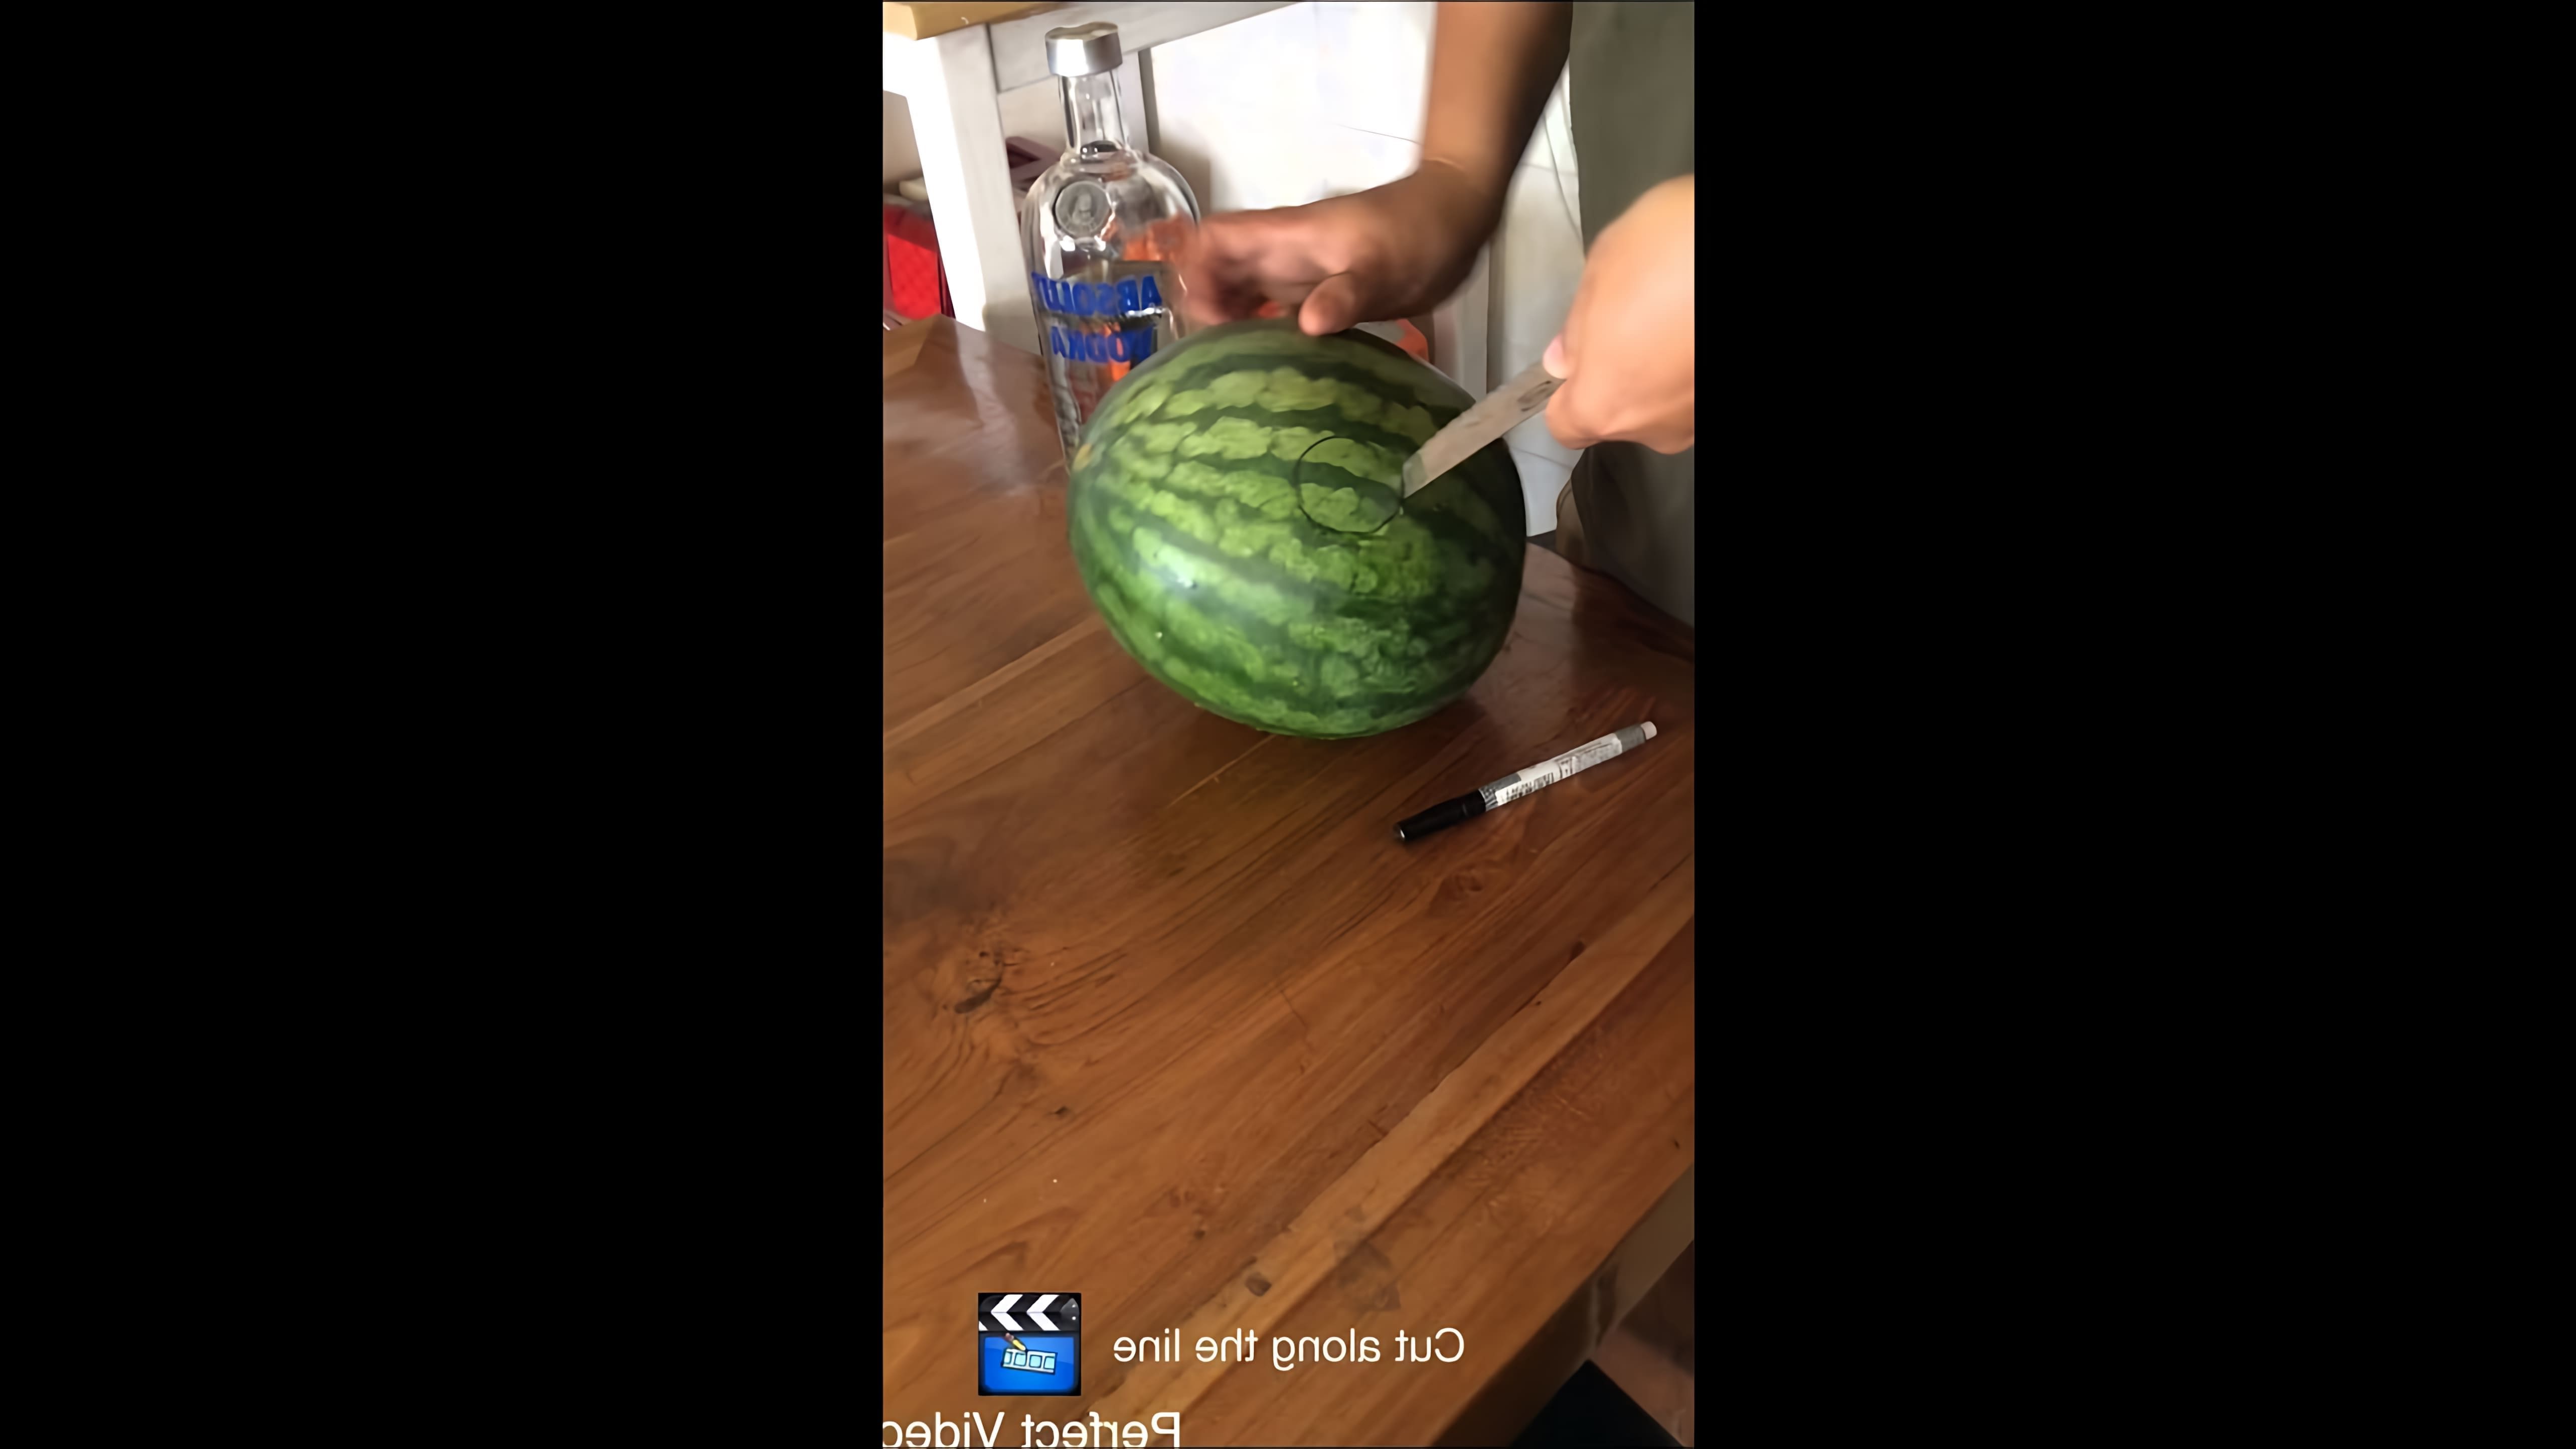 Vodka watermelon - это видео-ролик, который демонстрирует процесс приготовления коктейля из водки и арбуза